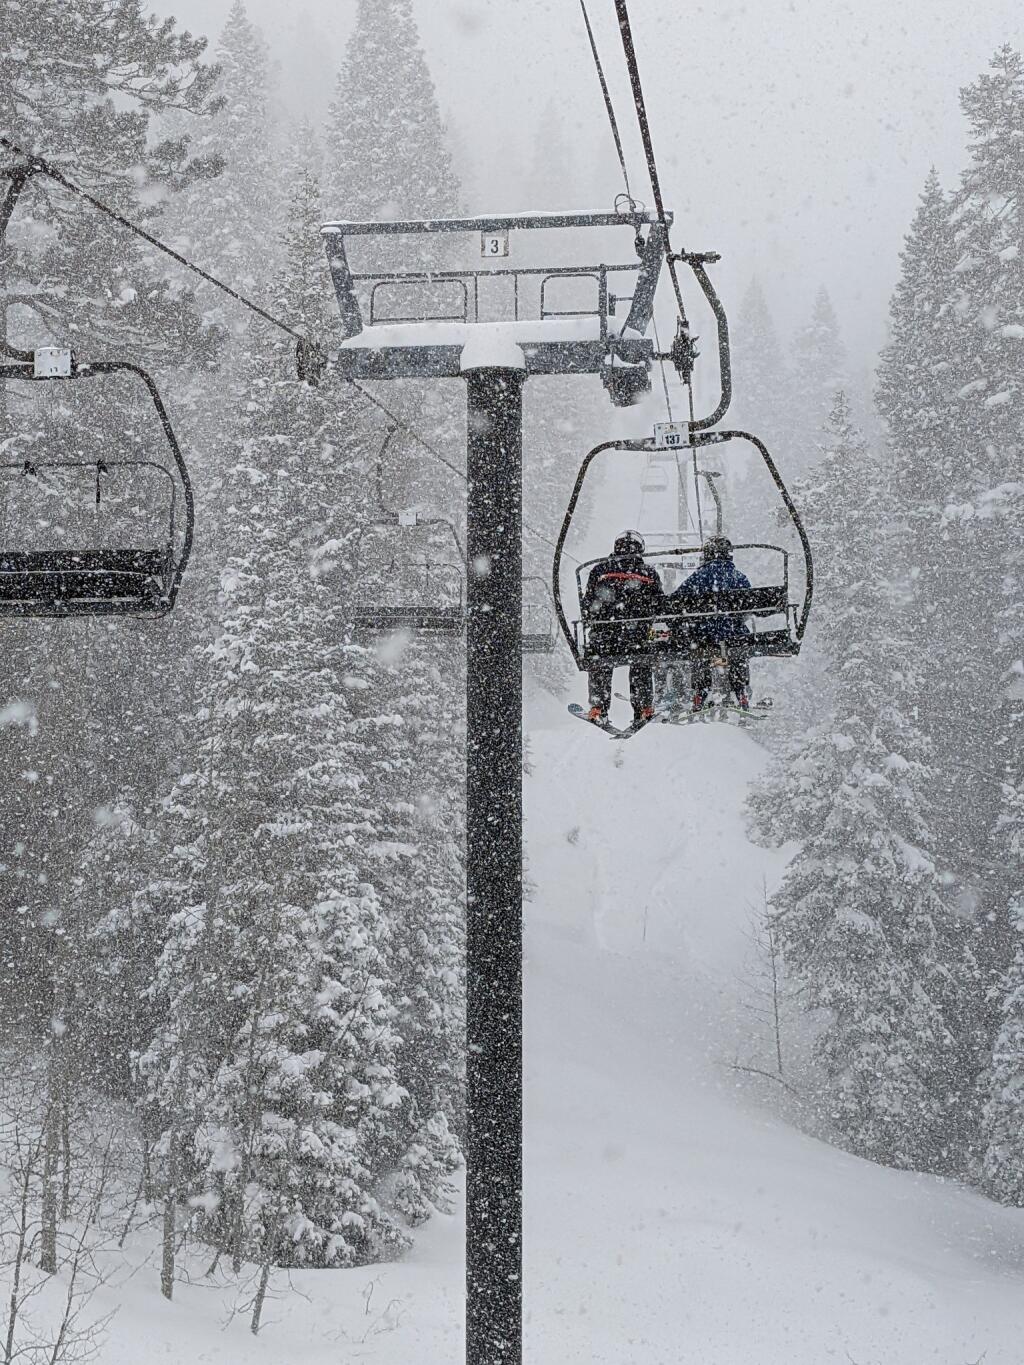 Skiers ride ski lifts at Palisades Tahoe, Feb. 25. (Tobias Toernqvist)